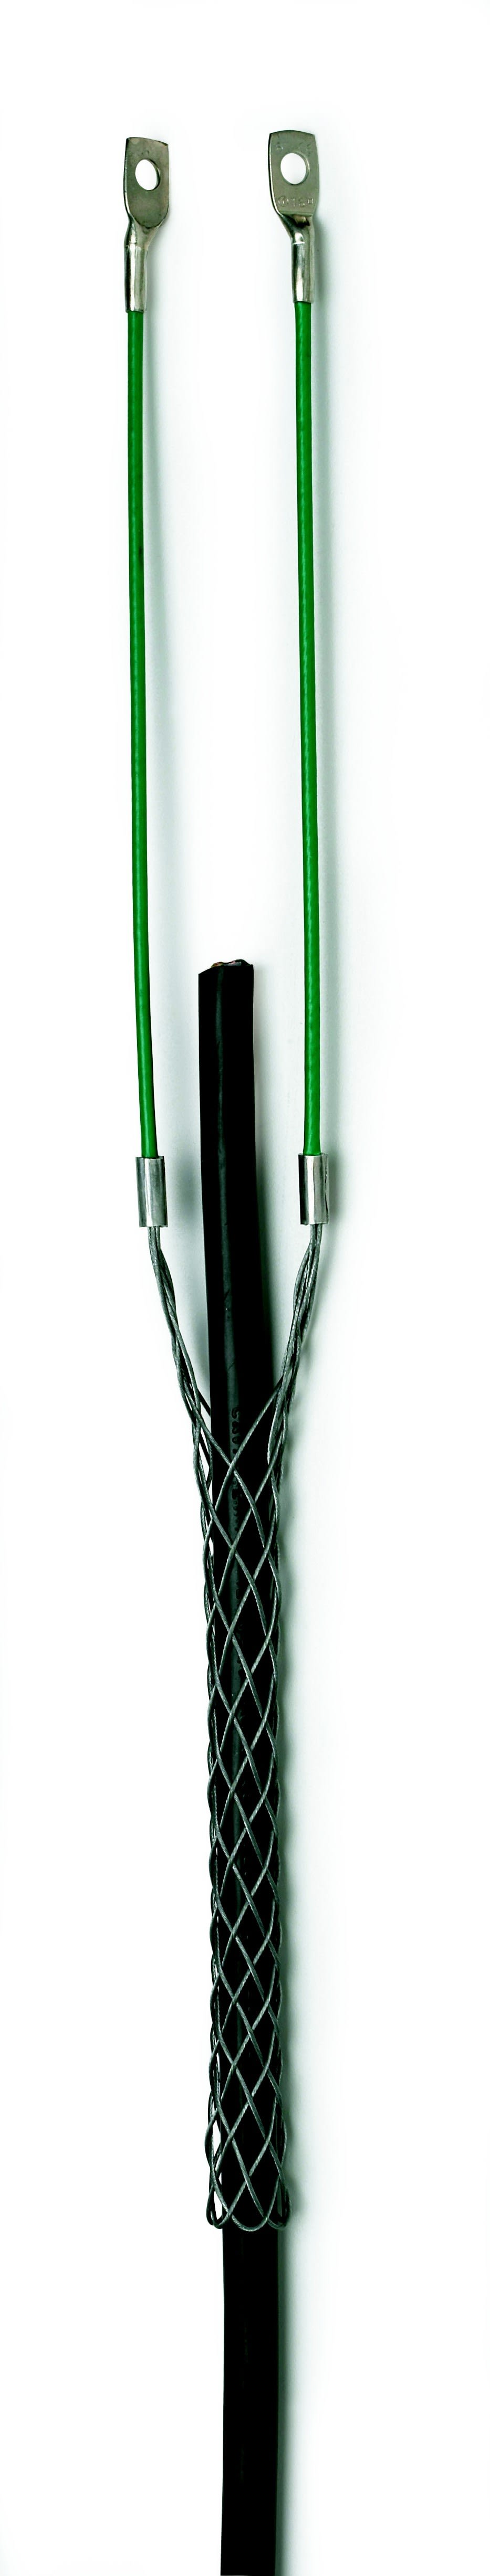 Cable Equipements - Chaussette de tirage acier galvanisé - Pour câble Ø 15 à 18mm